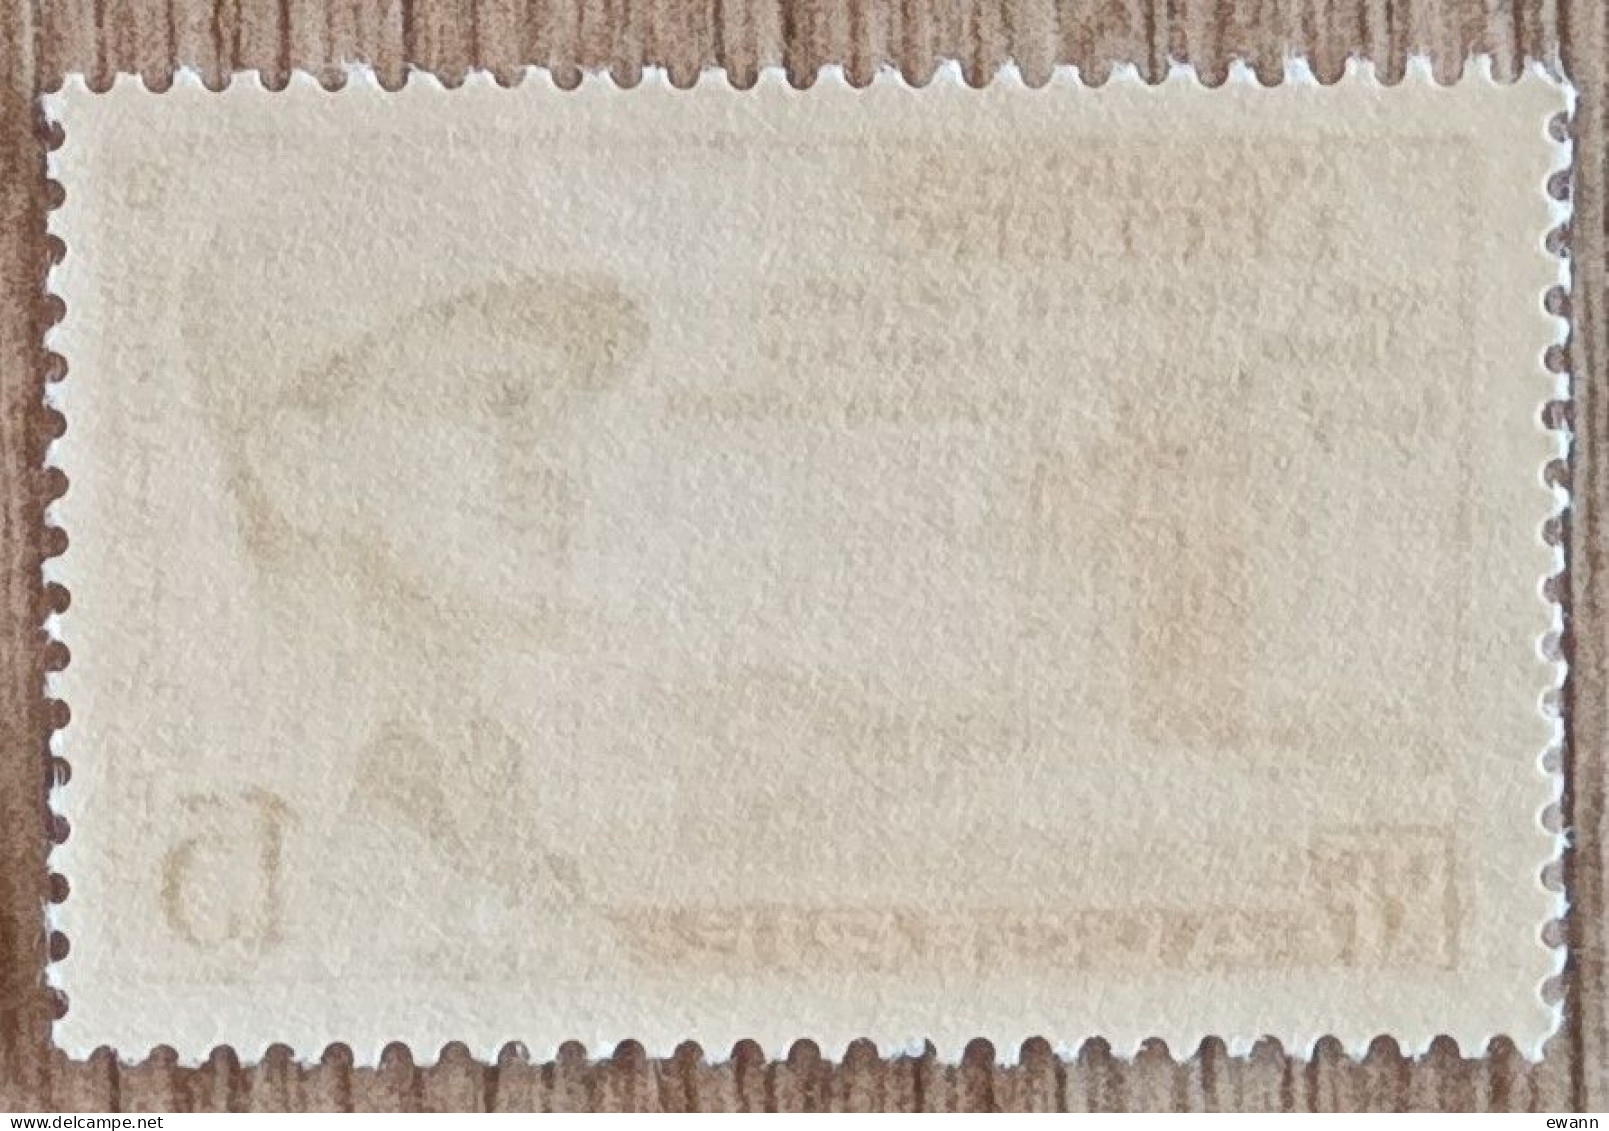 Algérie - YT N°338 - Maréchal Leclerc - 1956 - Neuf - Unused Stamps